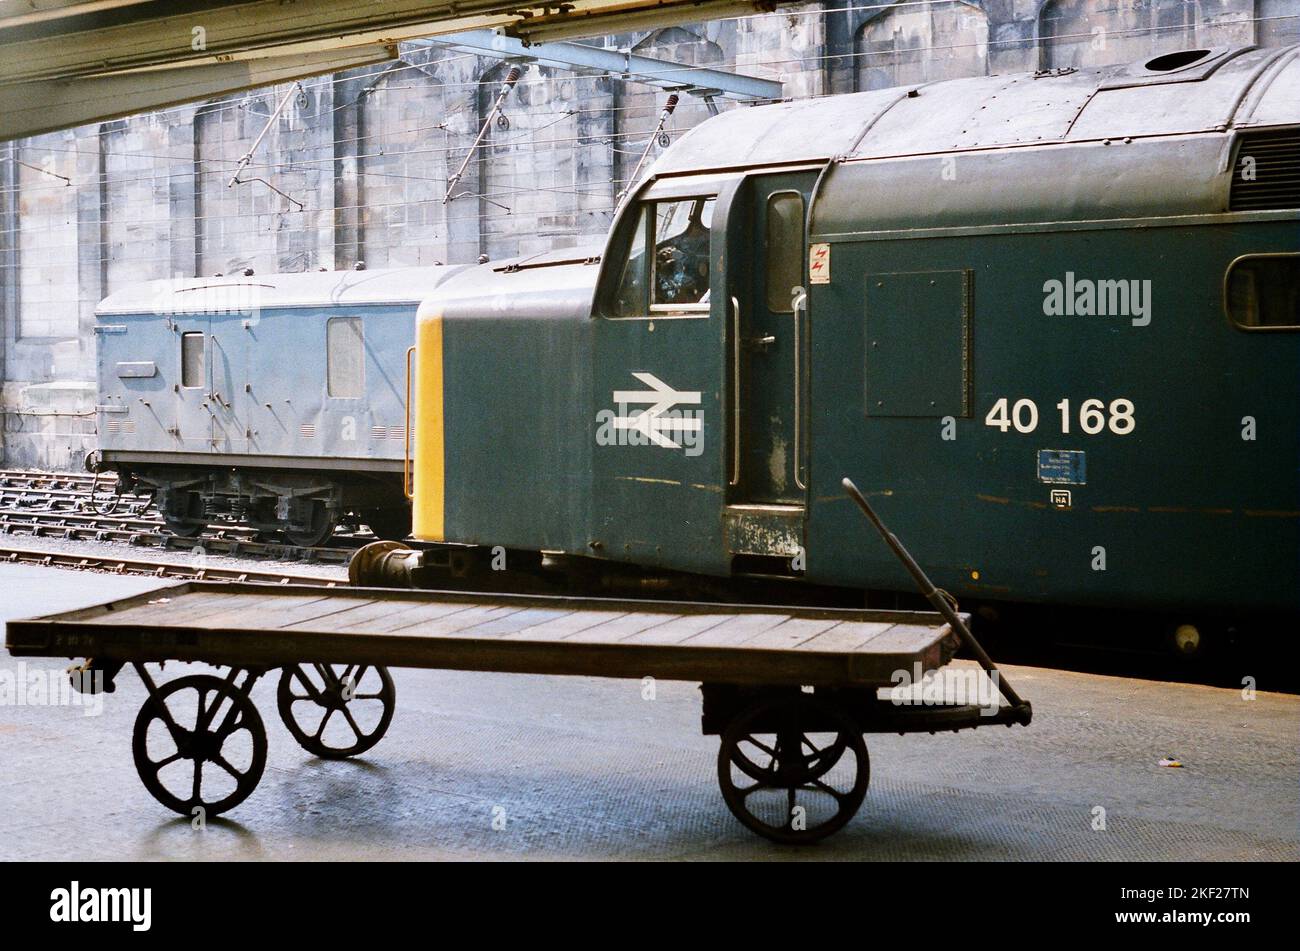 Le chemin de fer de style ancien - 40168 ex-Scottish Region Class 40 attend à la gare de Carlisle Citadel avec 1E23, le 10,40 à Leeds service - le conducteur appréciant une fumée calme. Pris le 21st juillet 1984. Banque D'Images